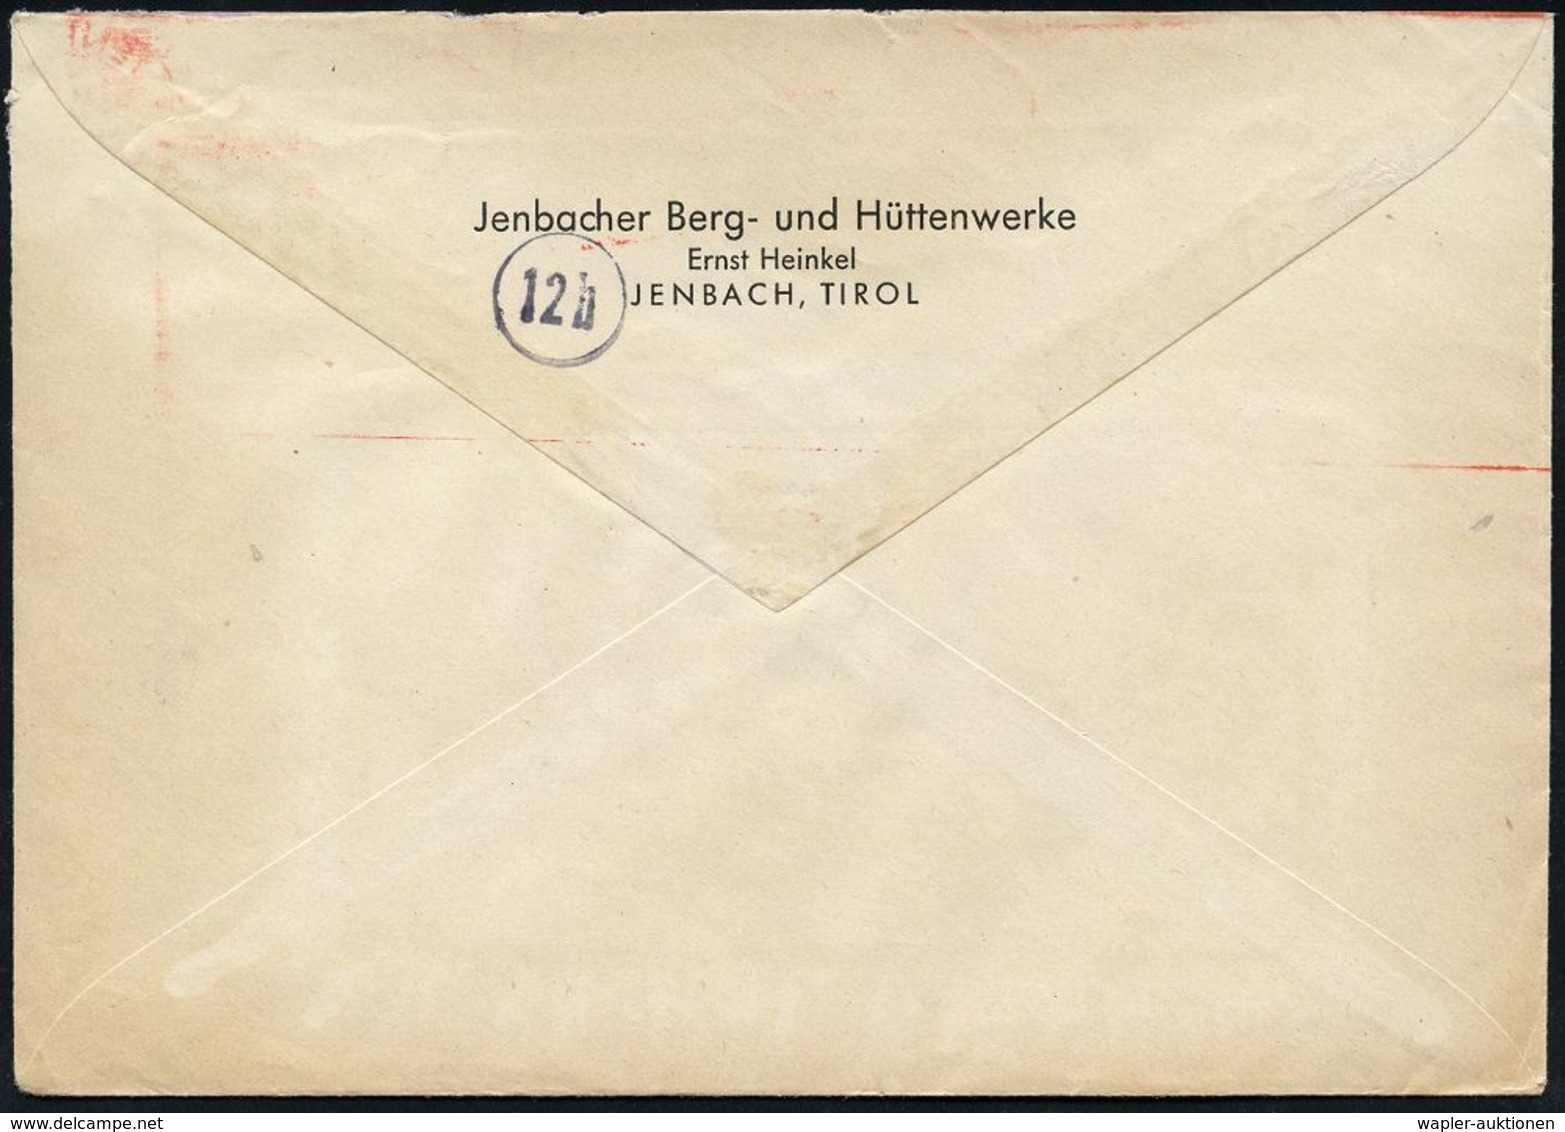 MILITÄRFLUGWESEN / MILITÄRFLUGZEUGE : JENBACH/ ERNST HEINKEL/ AG/ WERK JENBACH 1944 (23.12.) Sehr Seltener AFS = Heinkel - Flugzeuge